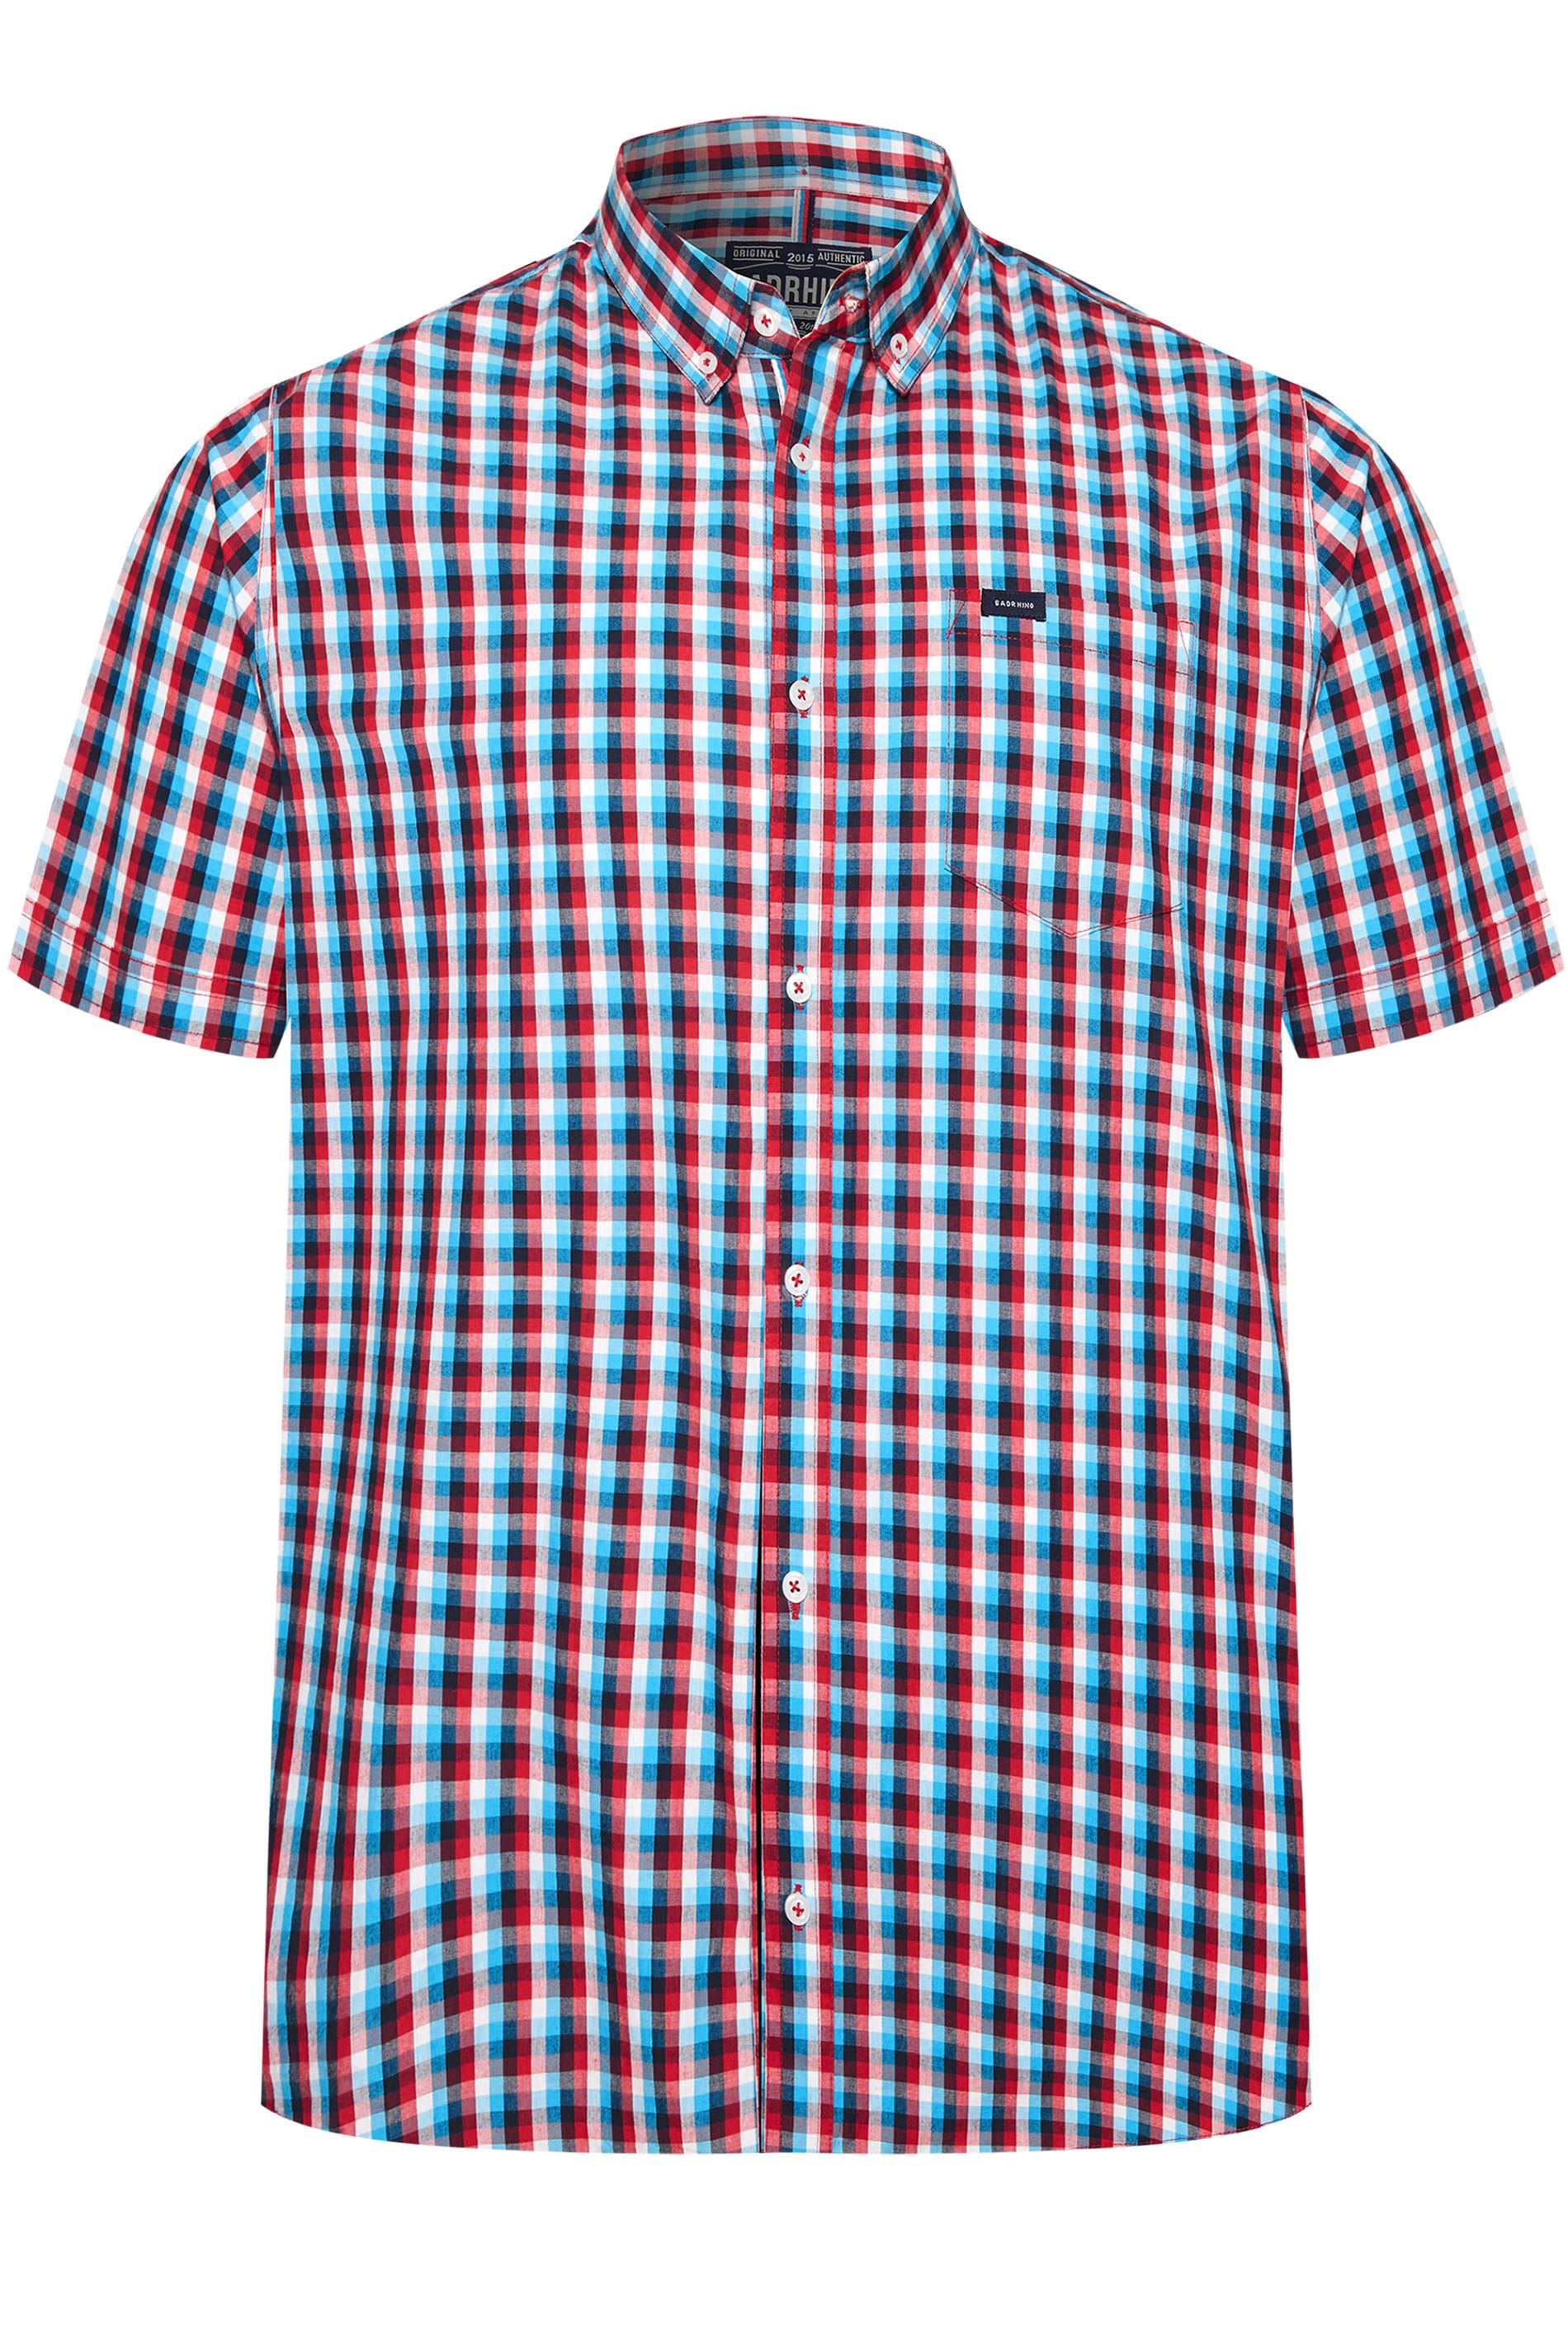 BadRhino Red & Blue Checked Shirt | Medium - 8XL | BadRhino